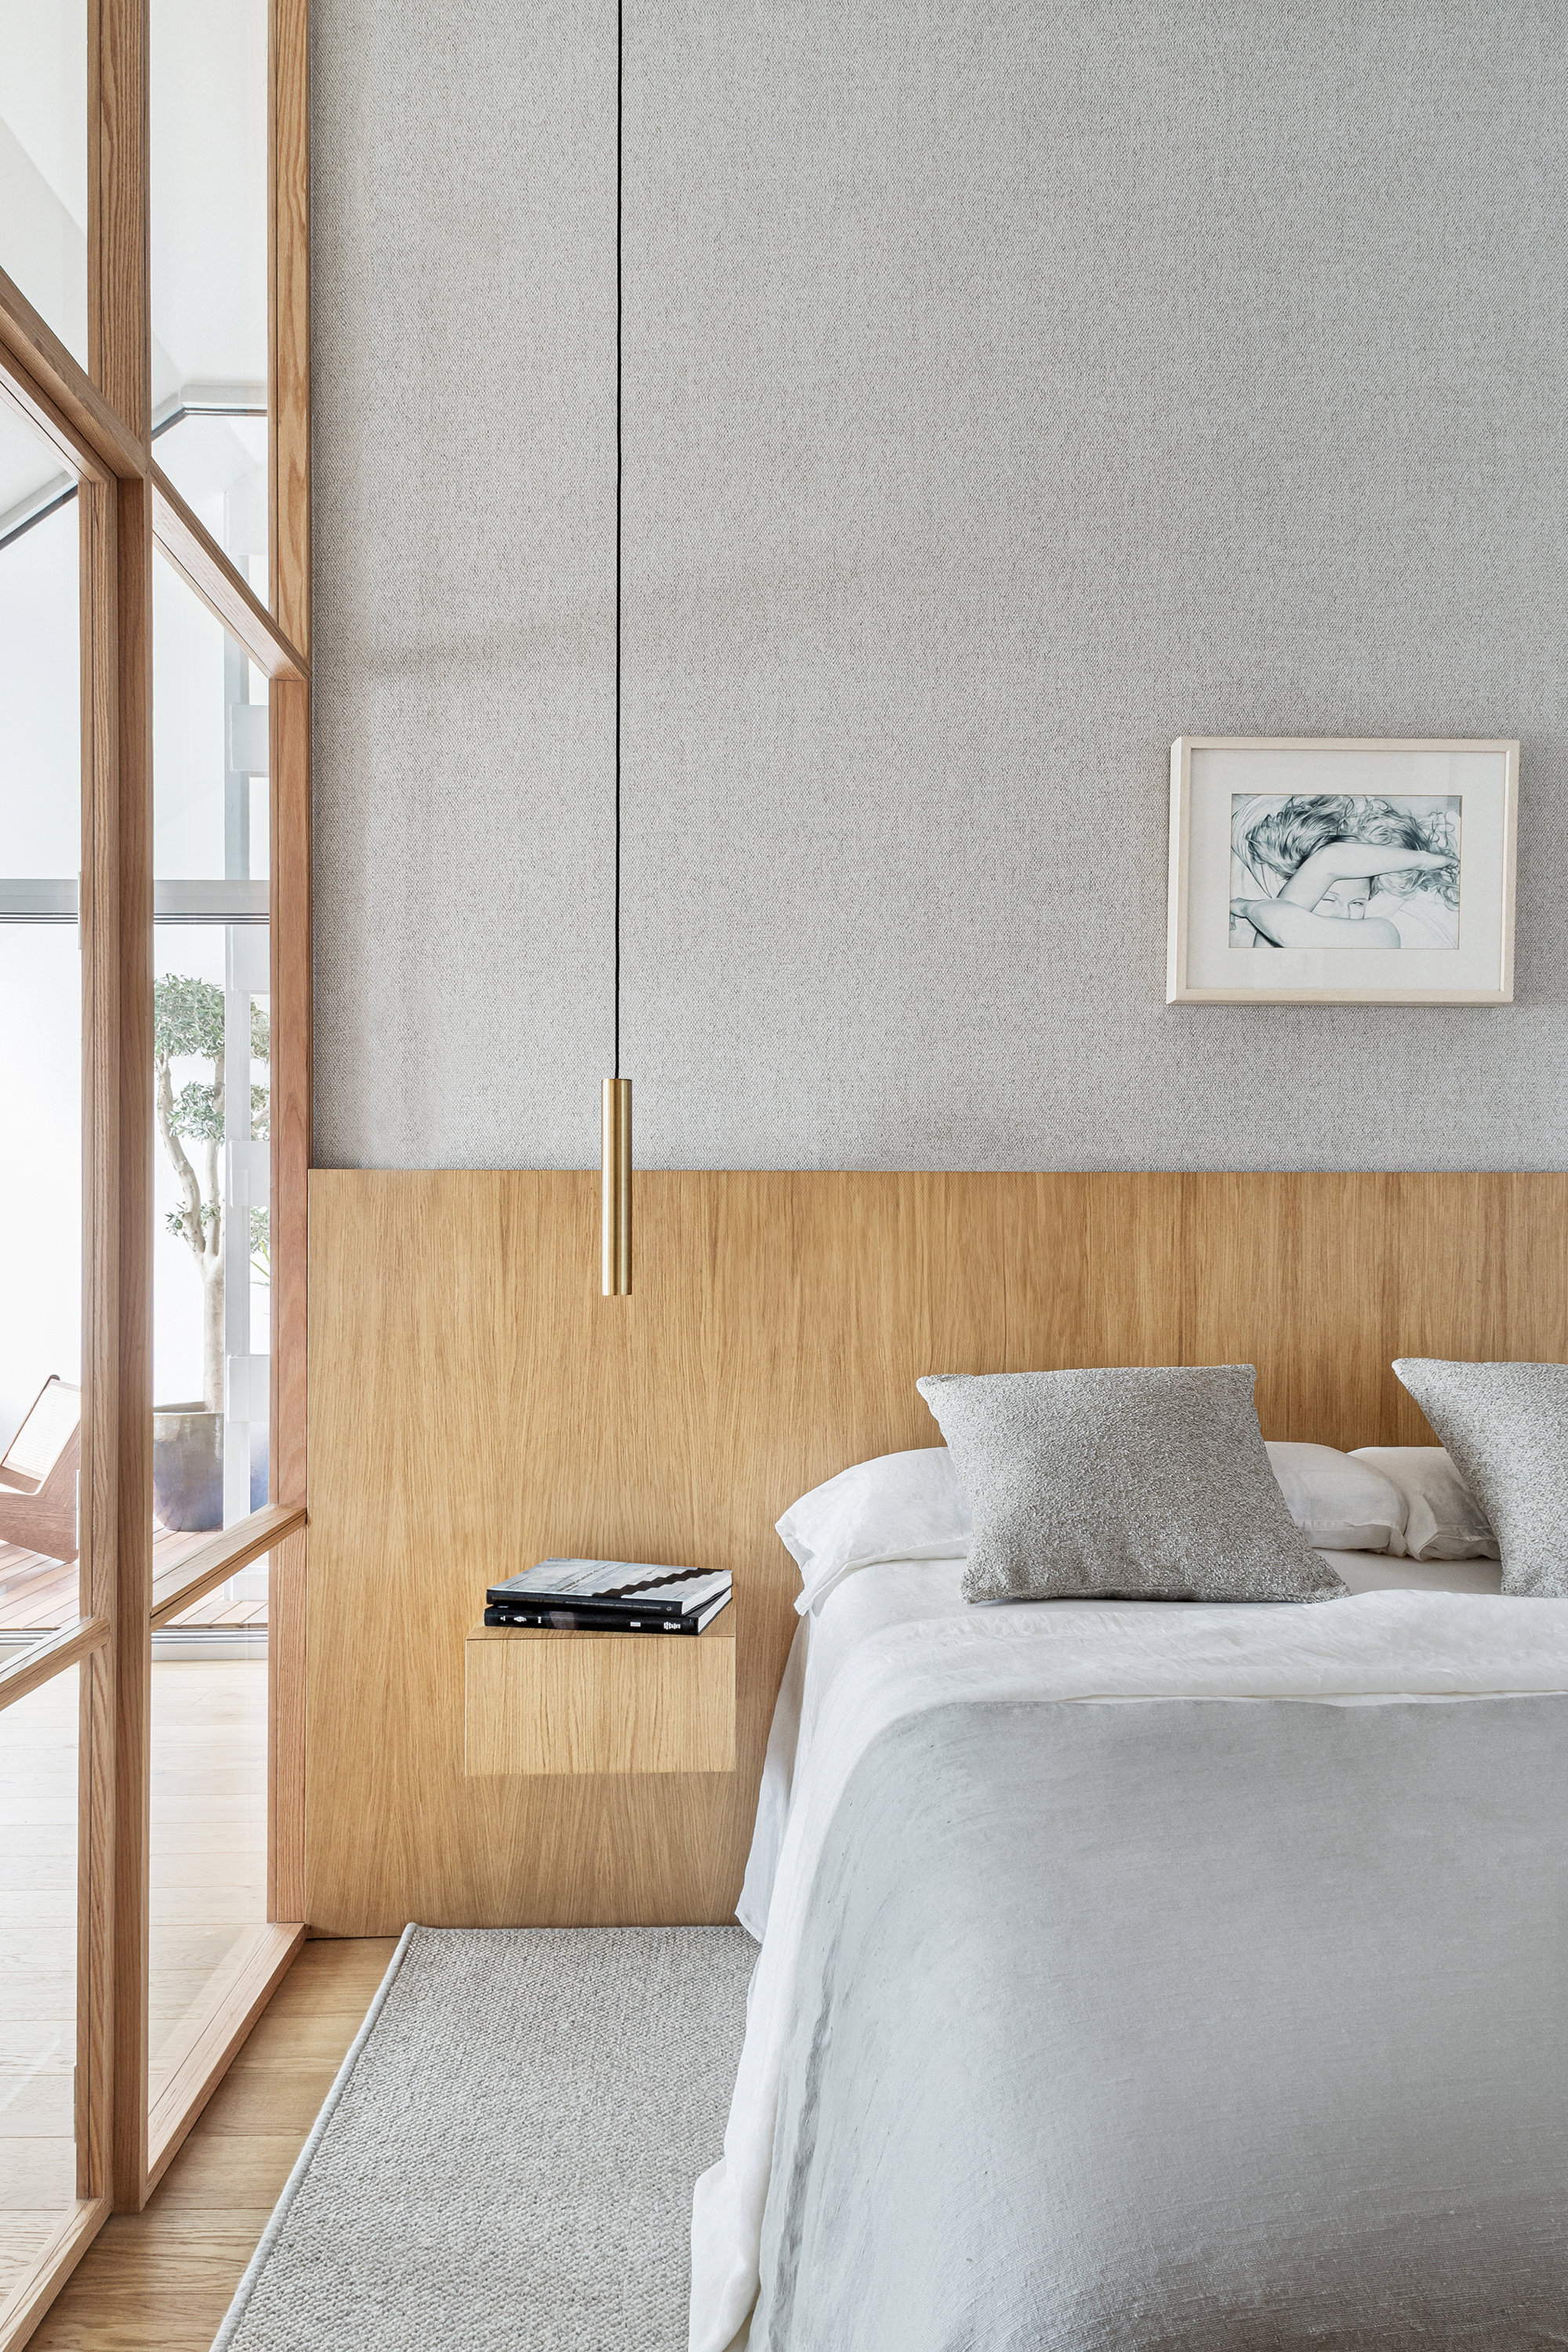 Dormitorio en colores claros, con madera y cuadro